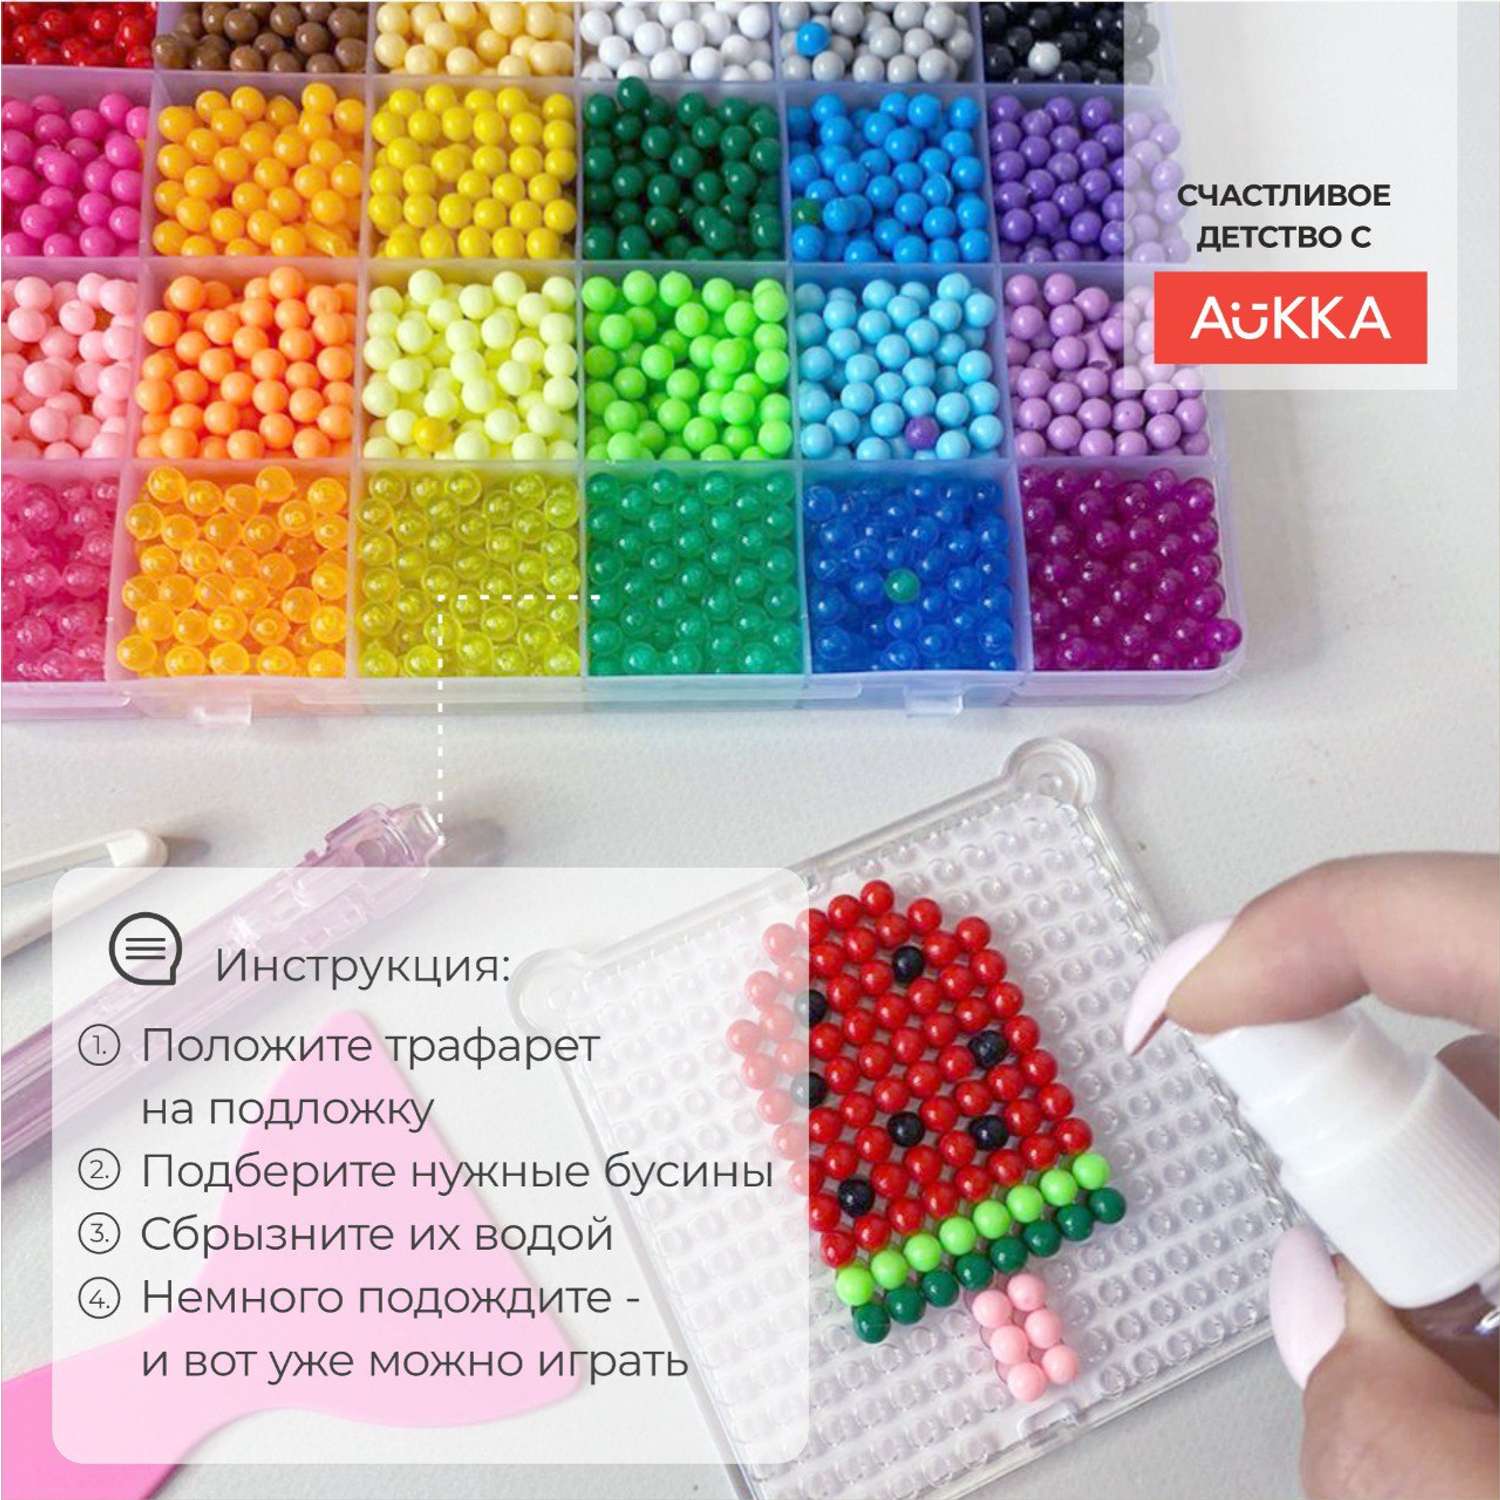 Развивающая детская игра AUKKA Аквамозаика 24 цвета 2700 бусин - фото 2